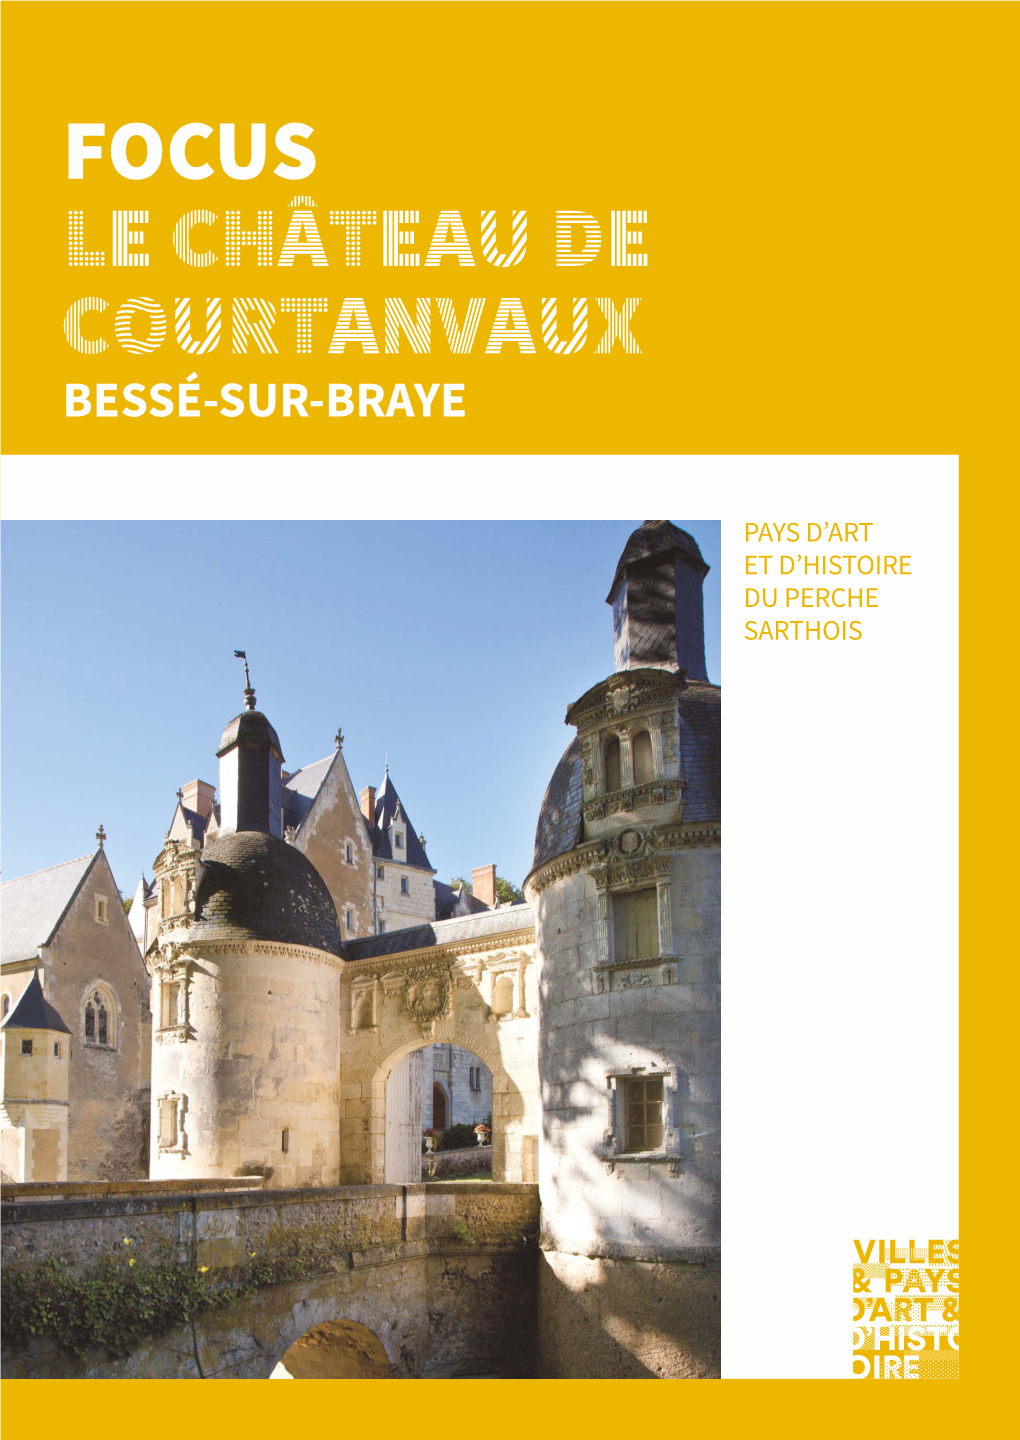 Focus Le Château De Courtanvaux Bessé-Sur-Braye